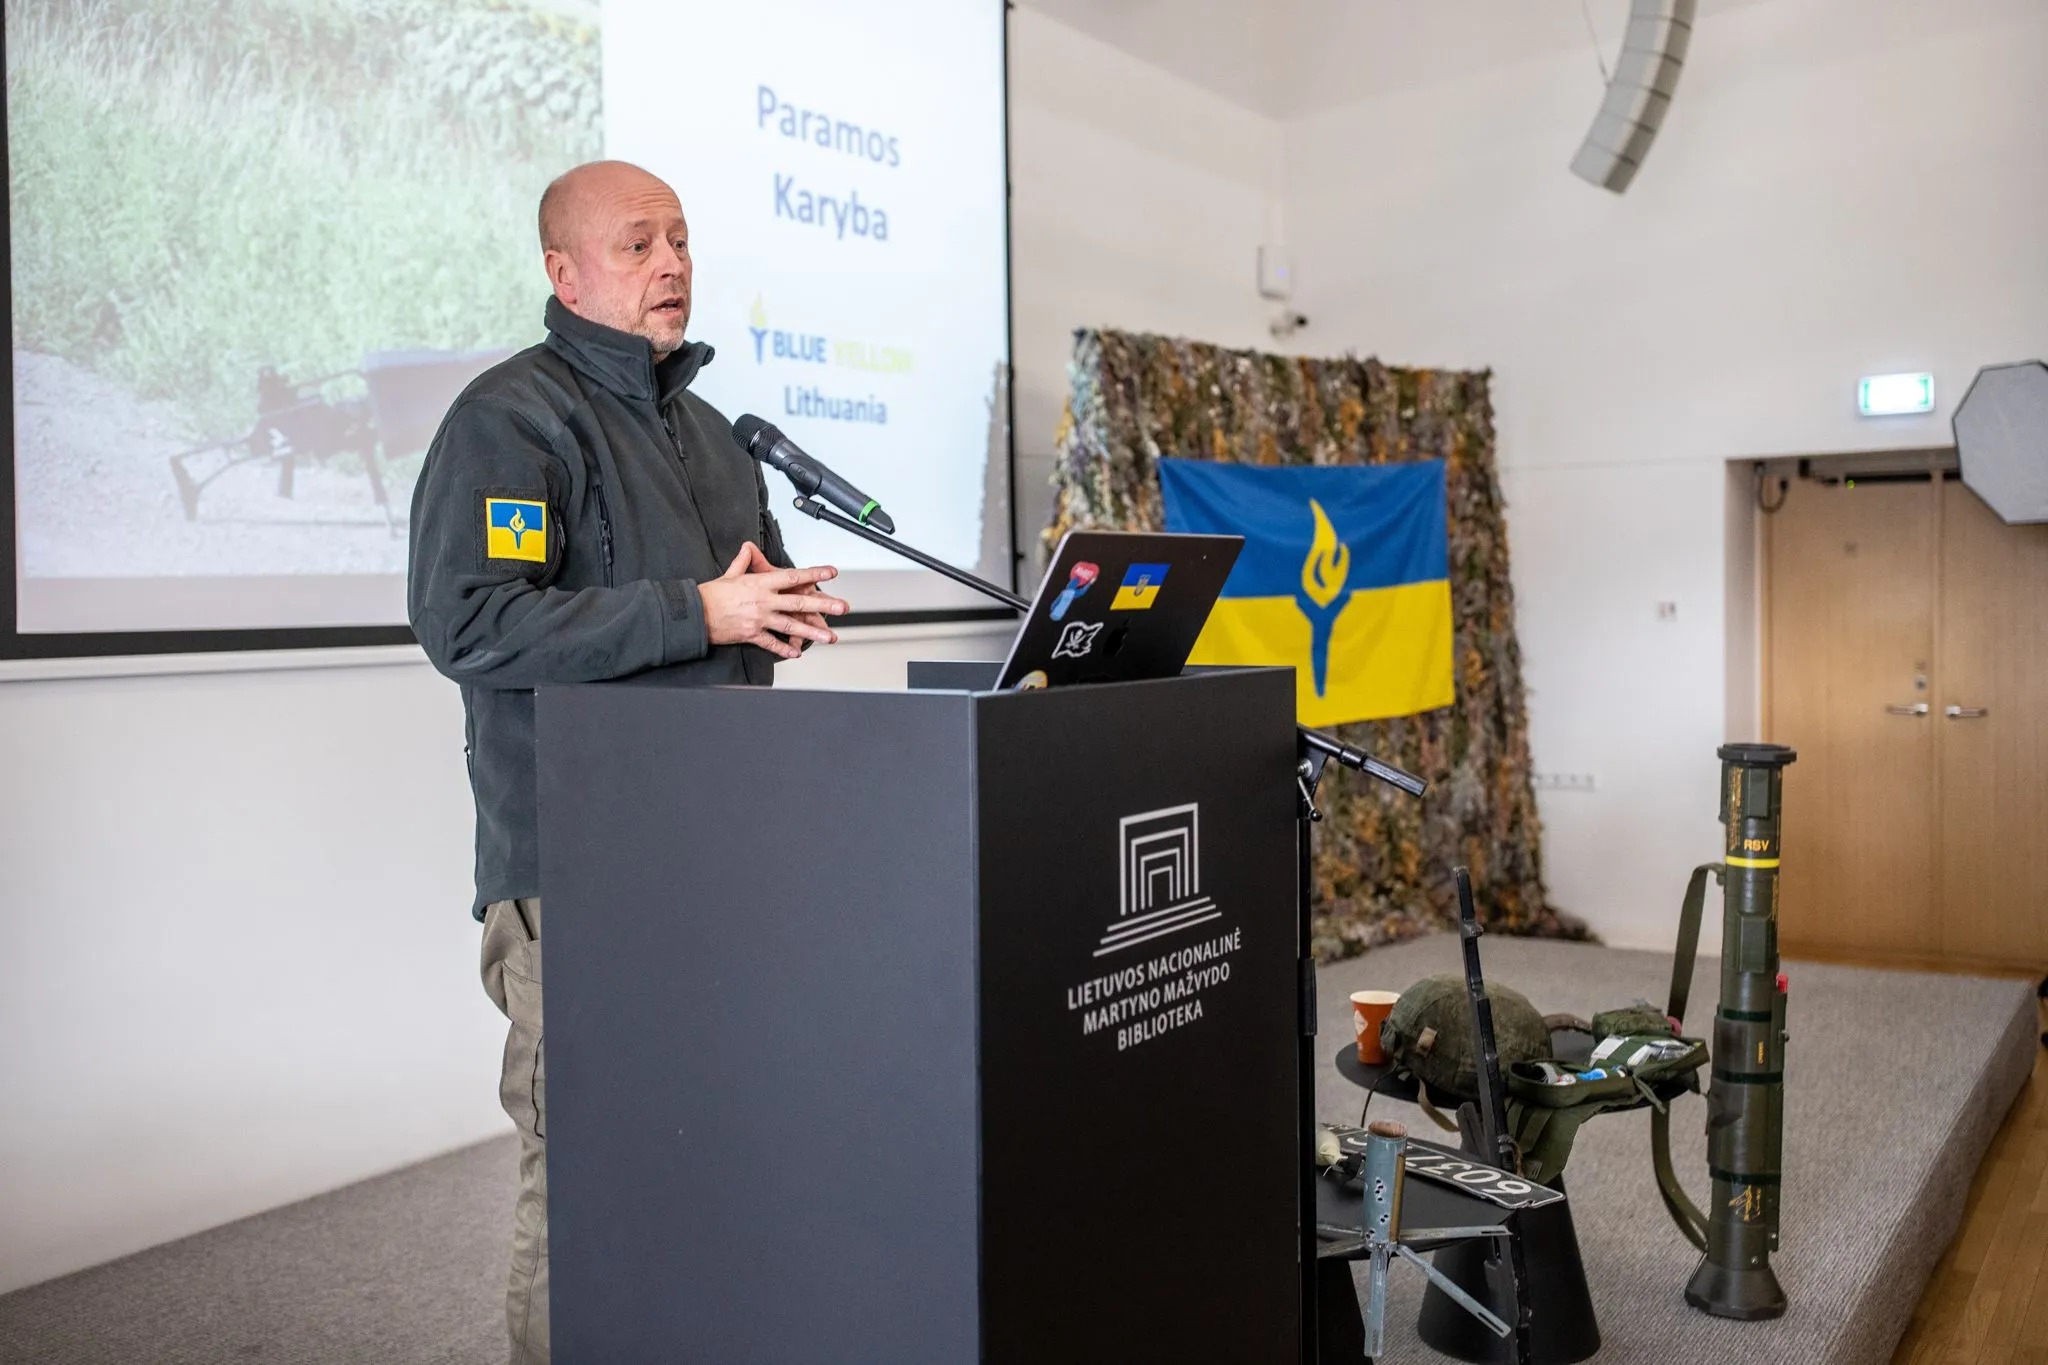 Організація Blue/Yellow for Ukraine багато років допомагають Україні